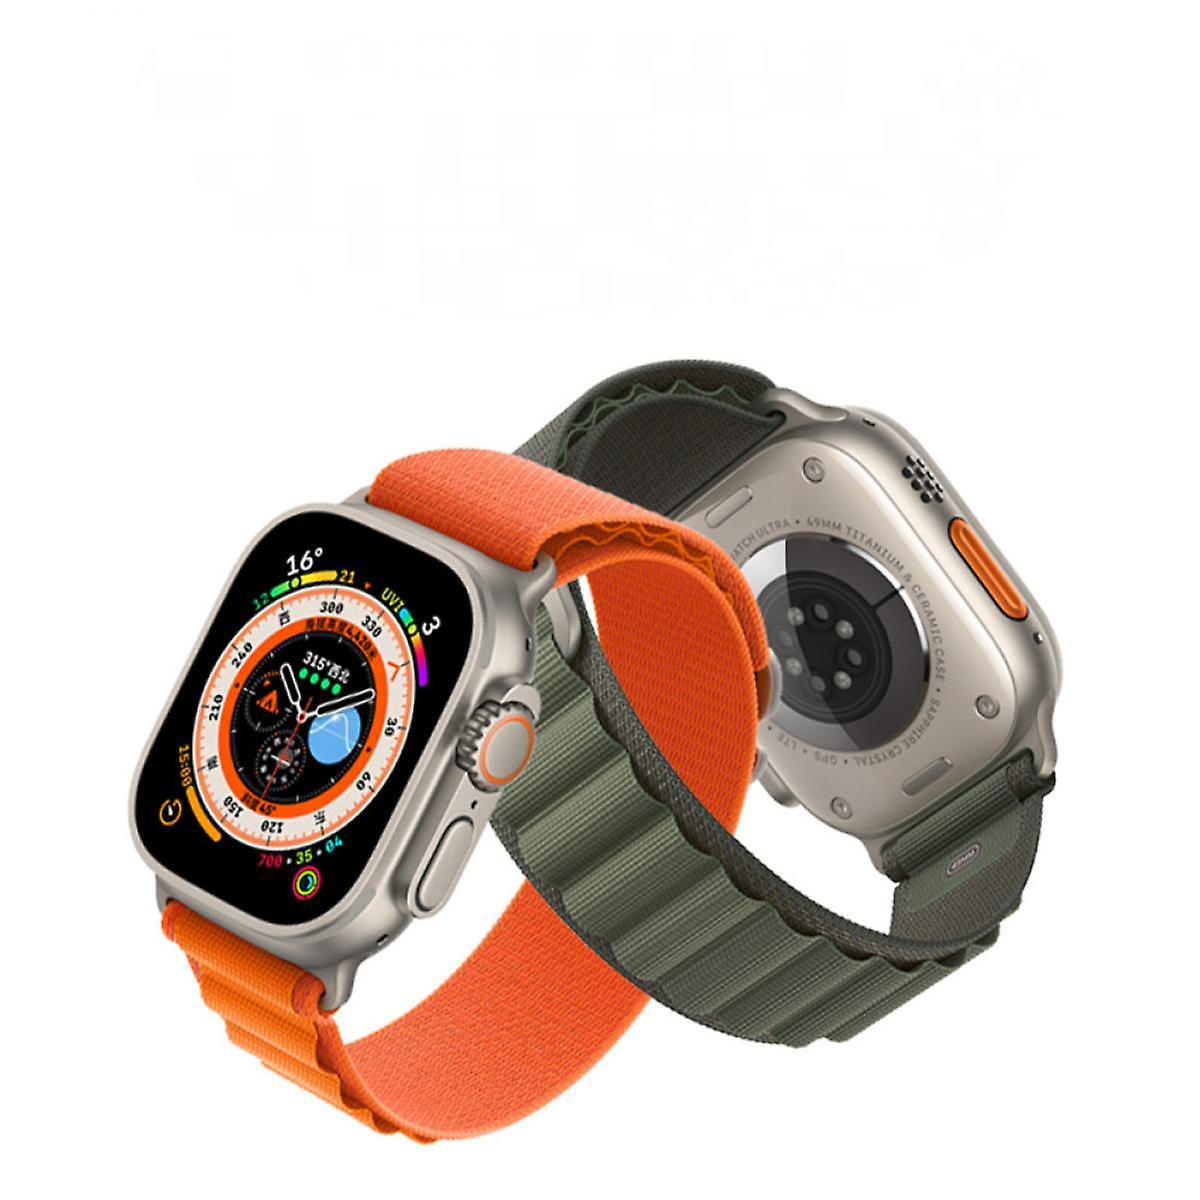 BT05A Alpine Woven Nylon Watch Band Watch 38/40/41mm  Universal Watch Band